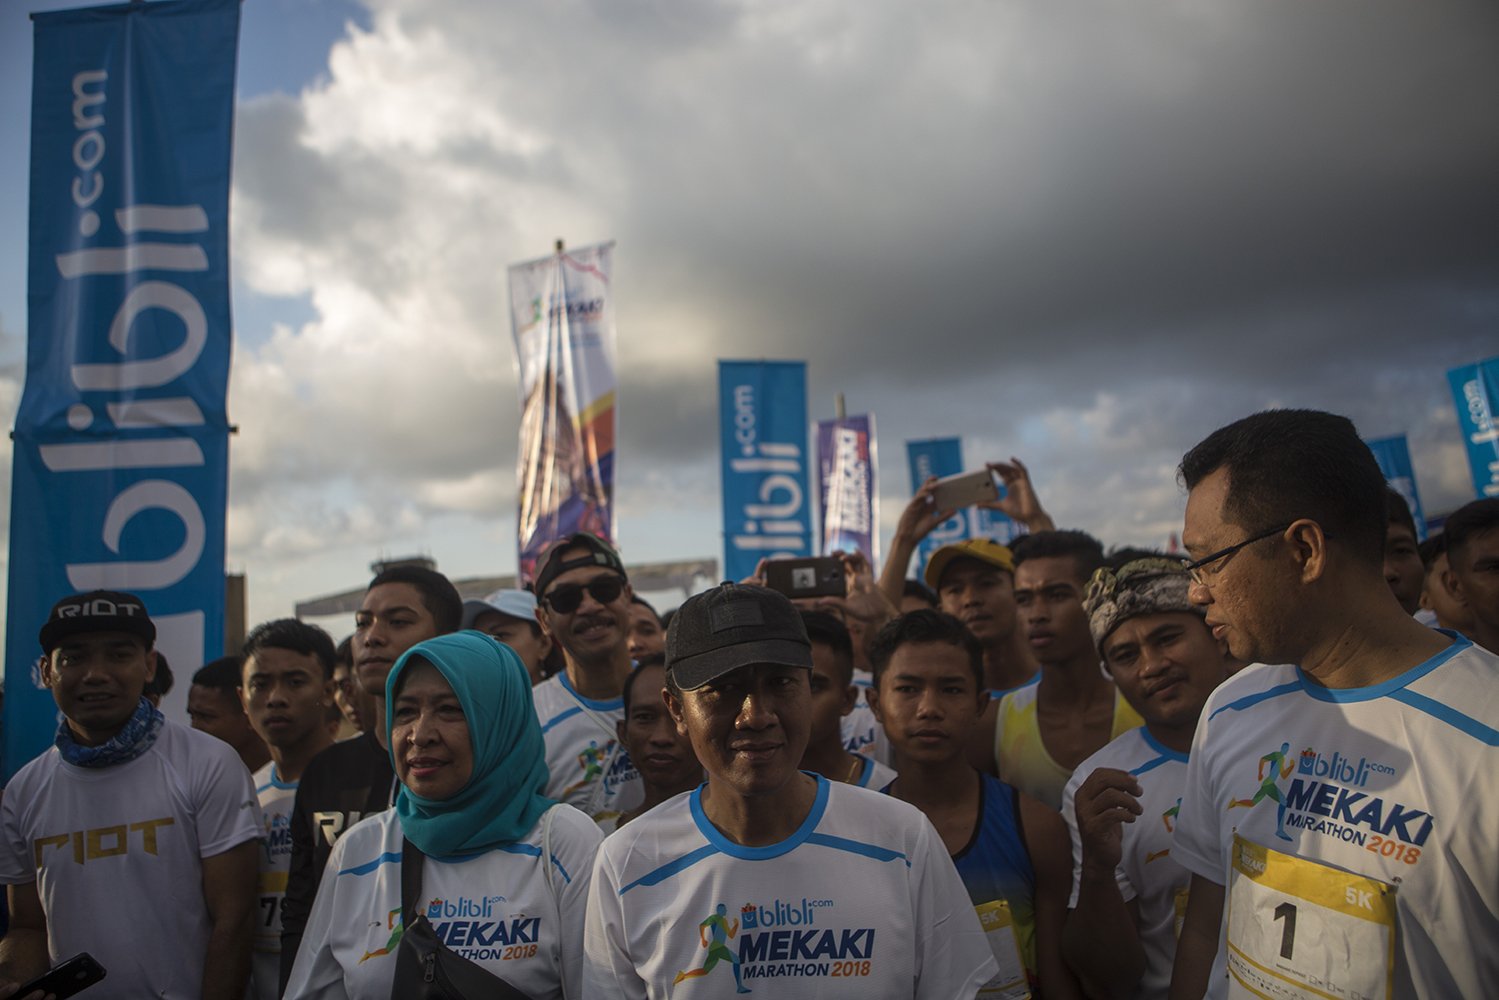 Bupati Lombok Barat Fauzan Khalid mengatakan, kegiatan ini sekaligus membuktikan kebangkitan pariwisata di Lombok.